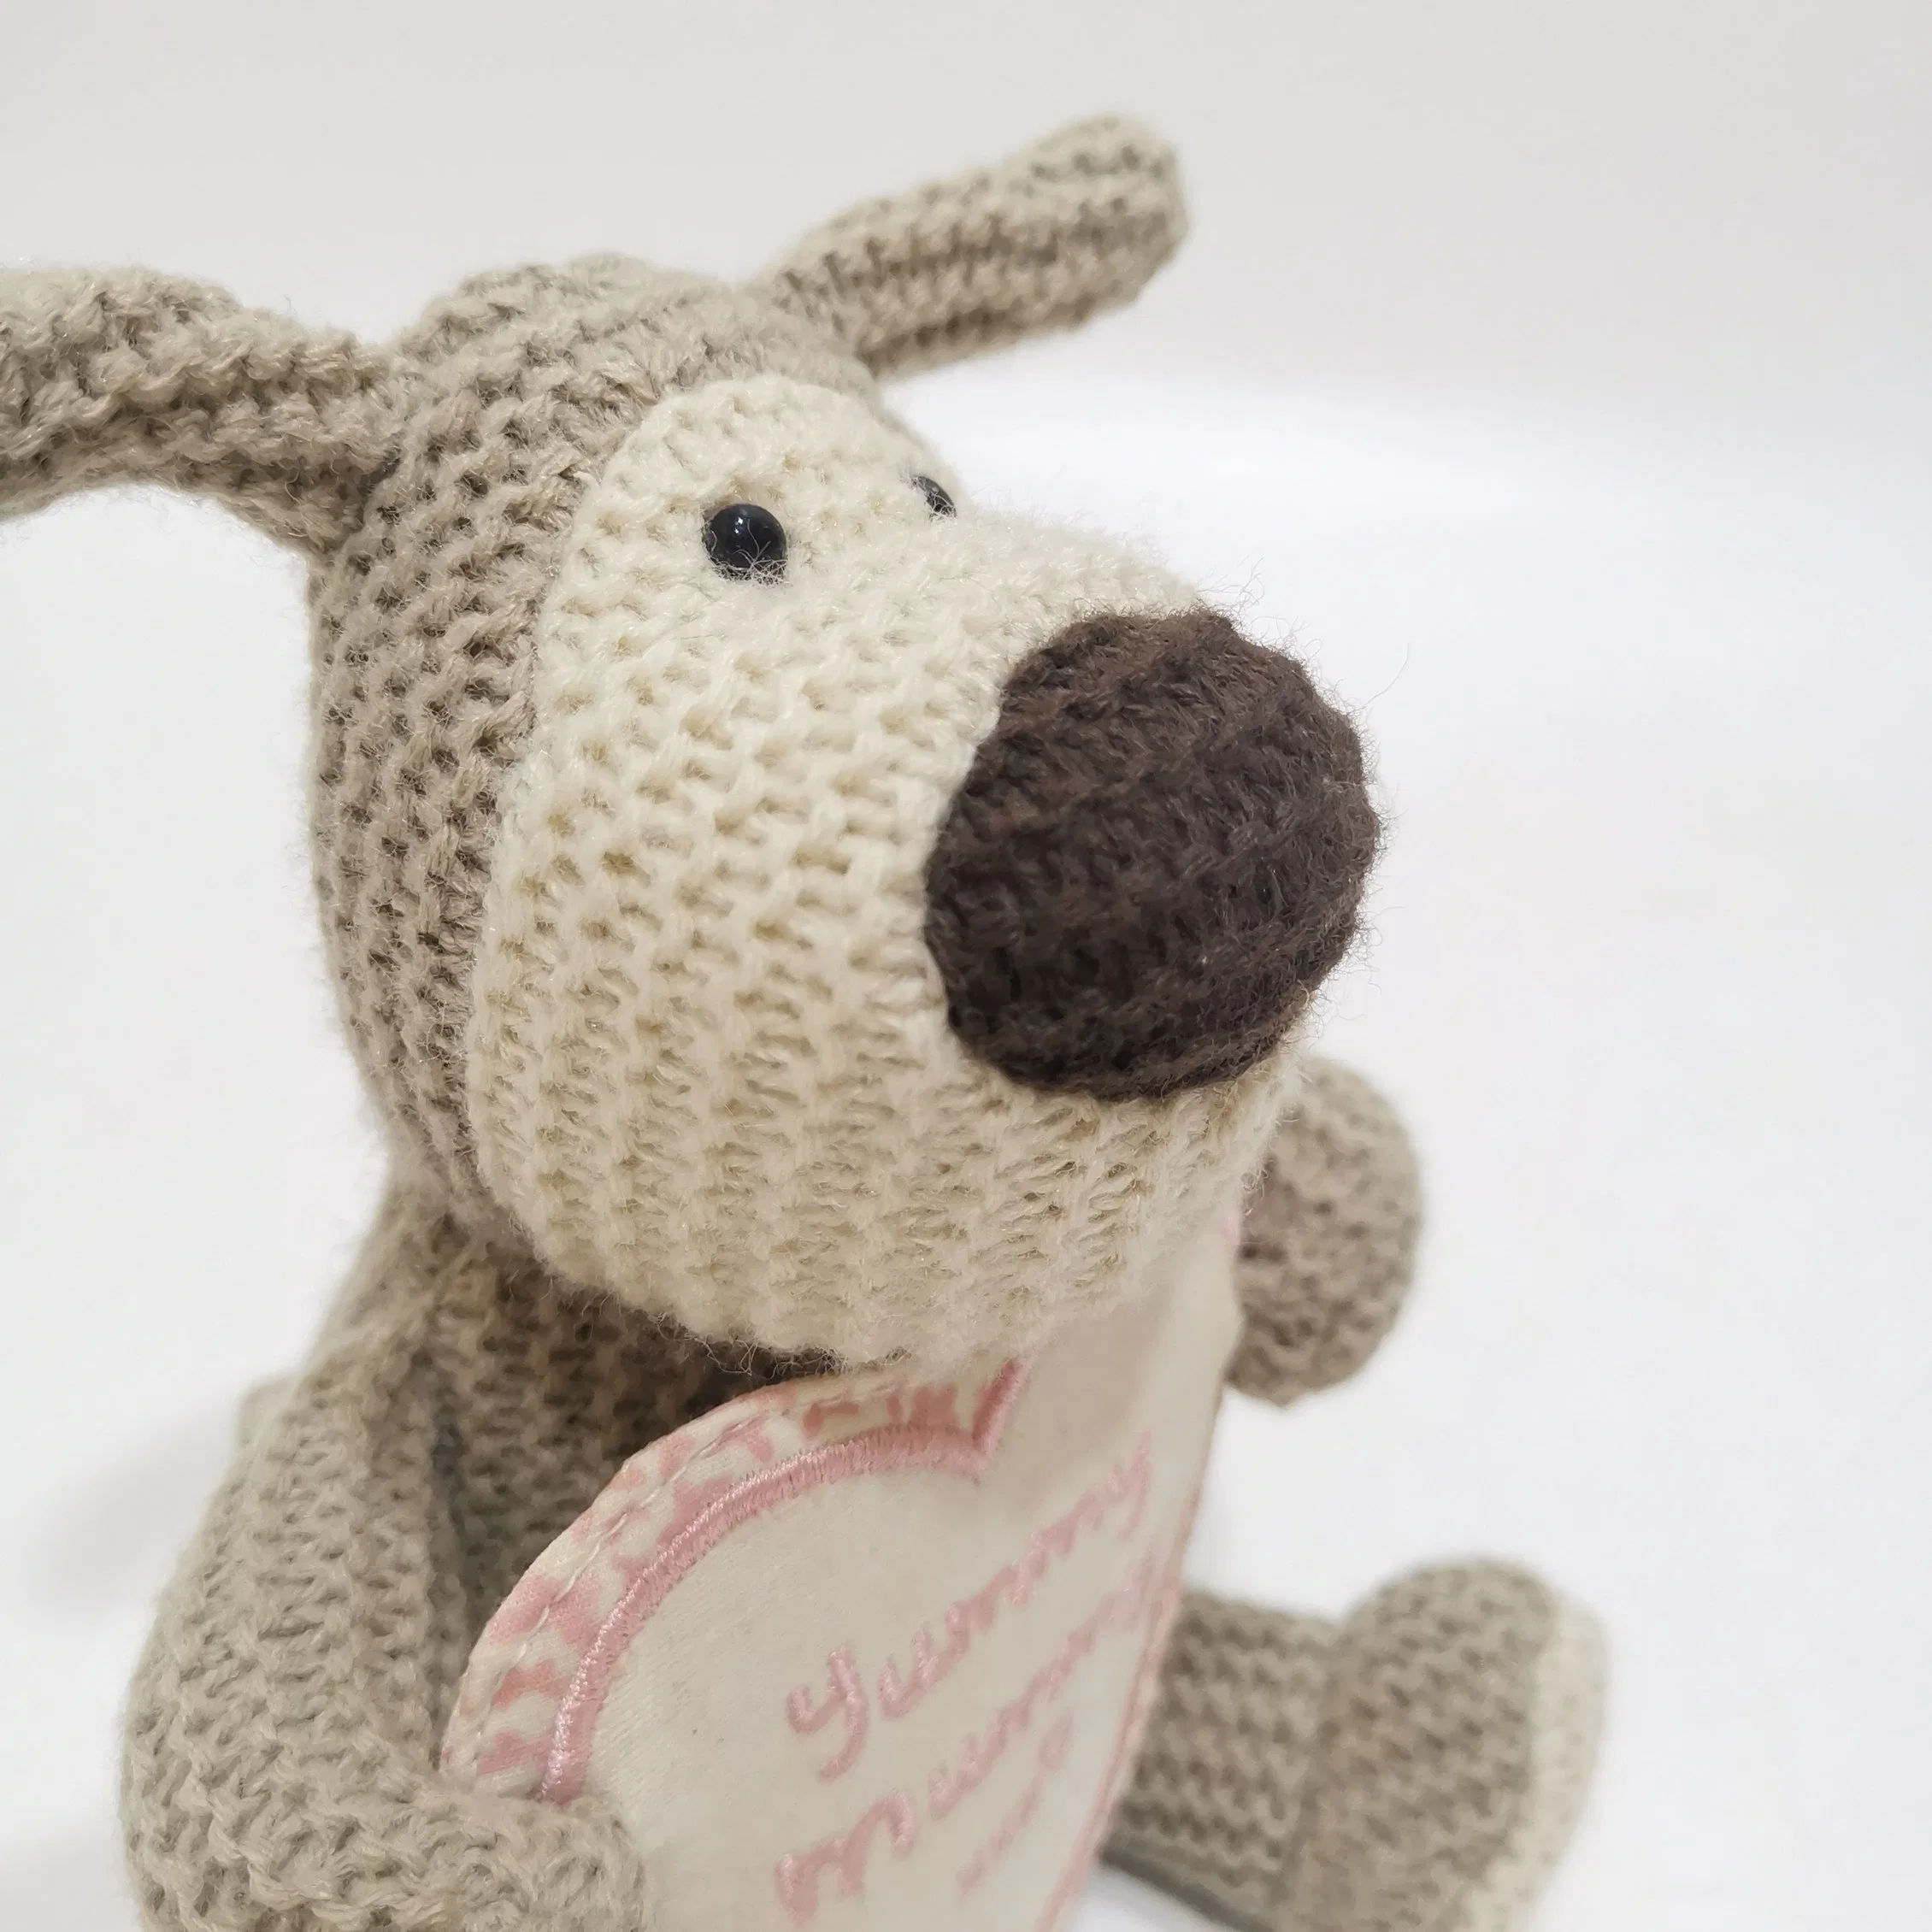 Venta caliente de 12 cm Juguete y lana adorable regalo de perro Para decoración y diversión